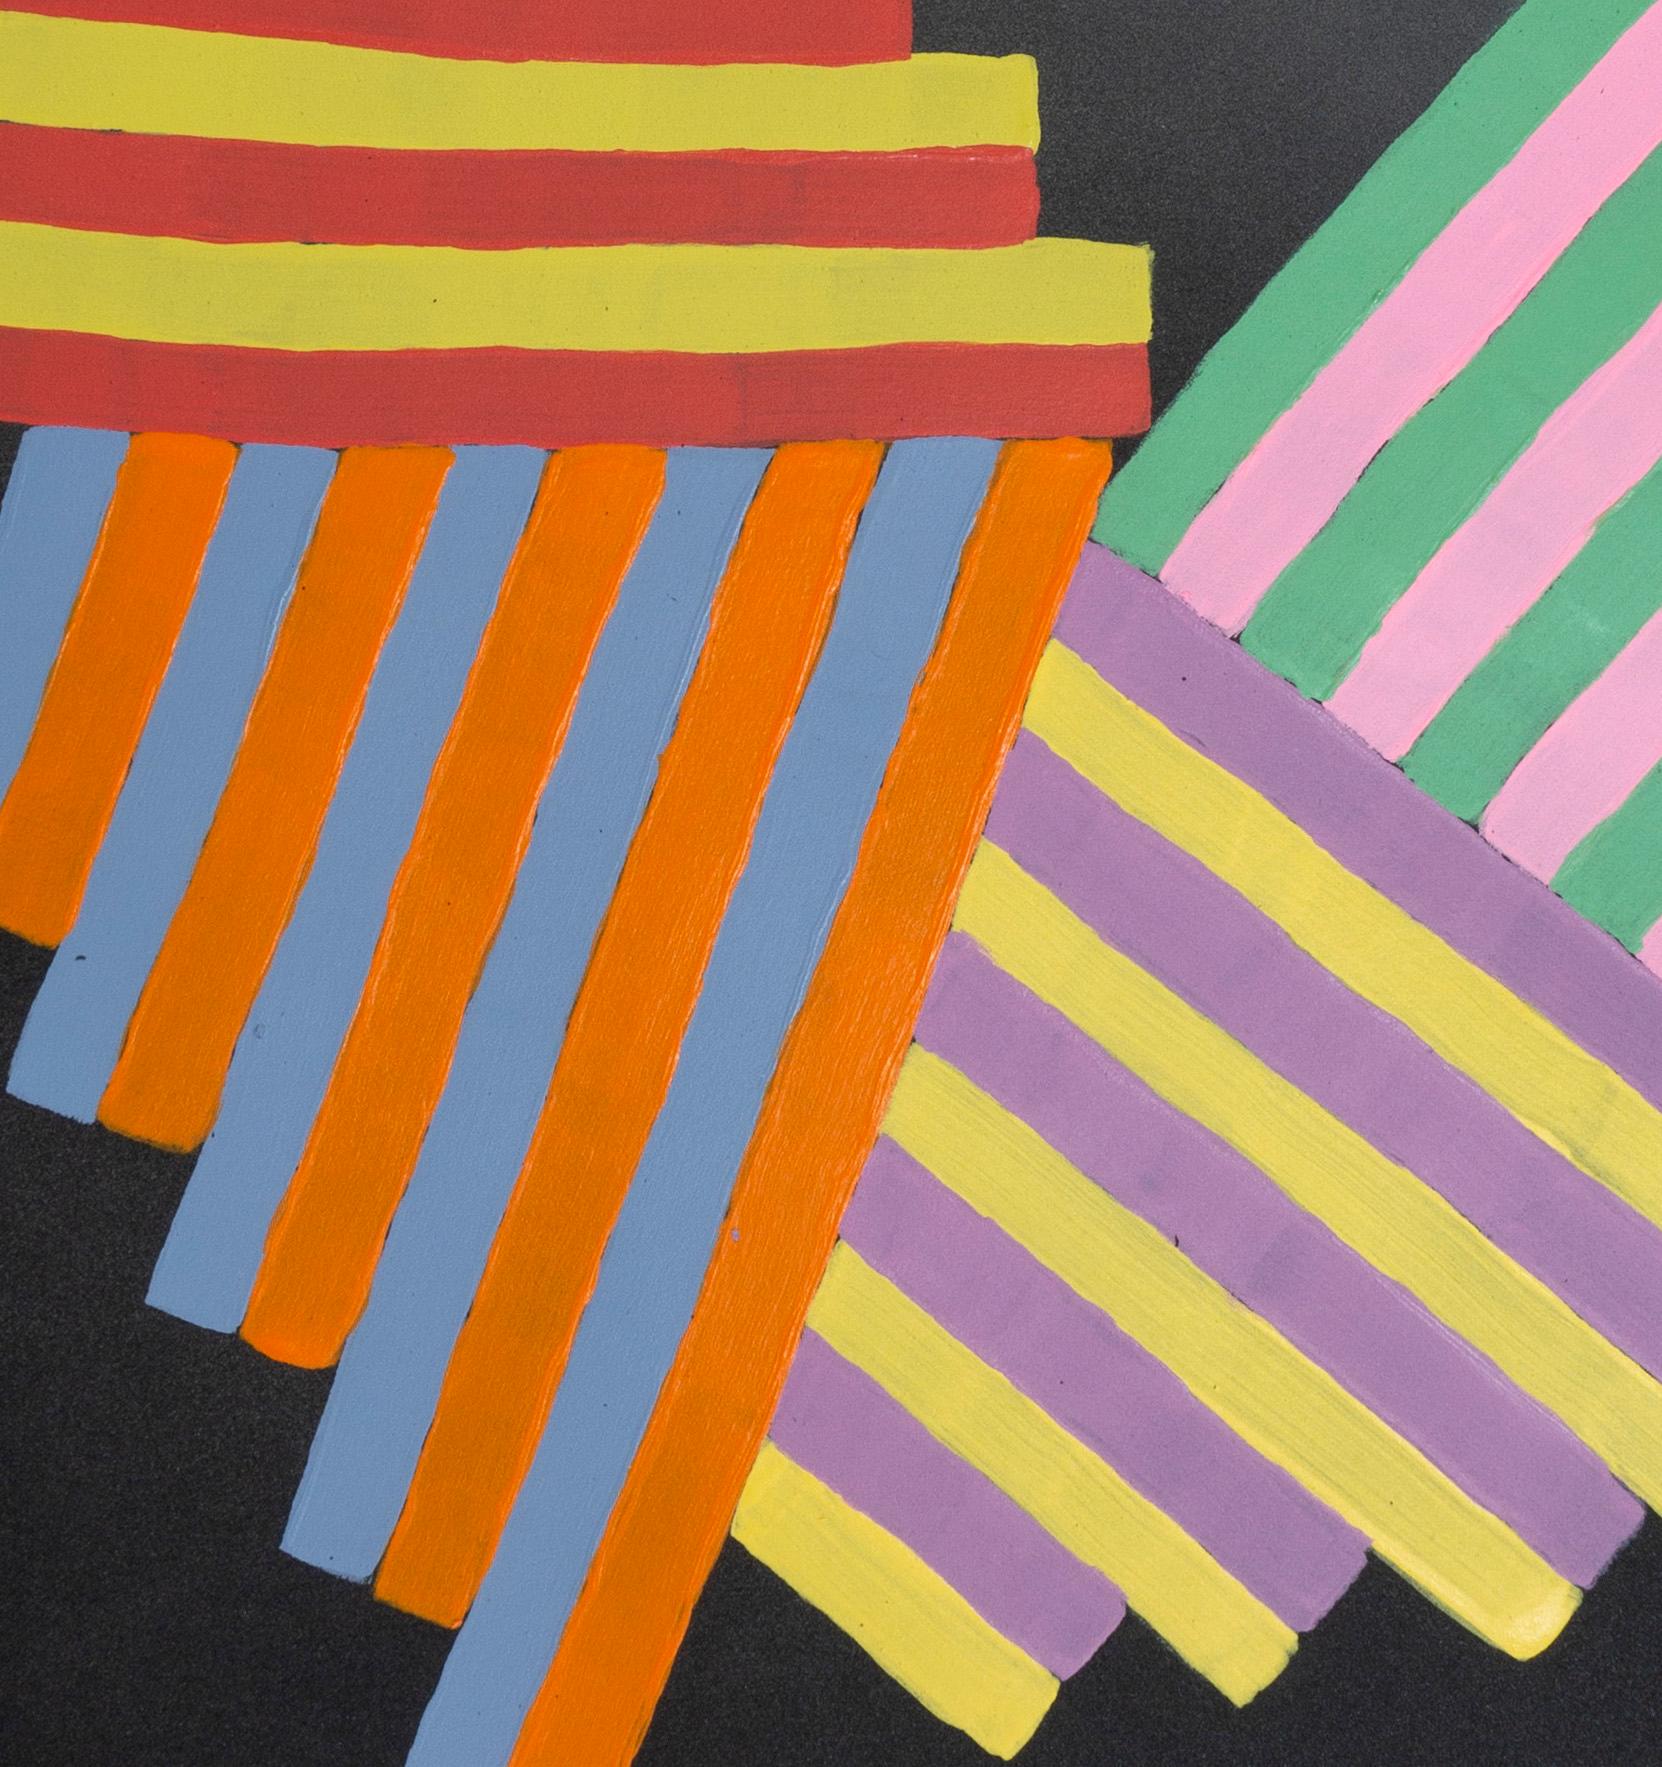 Intérieur Space n°12 : peinture géométrique abstraite sur papier ; bleu, jaune, rouge et noir - Painting de Jay Walker